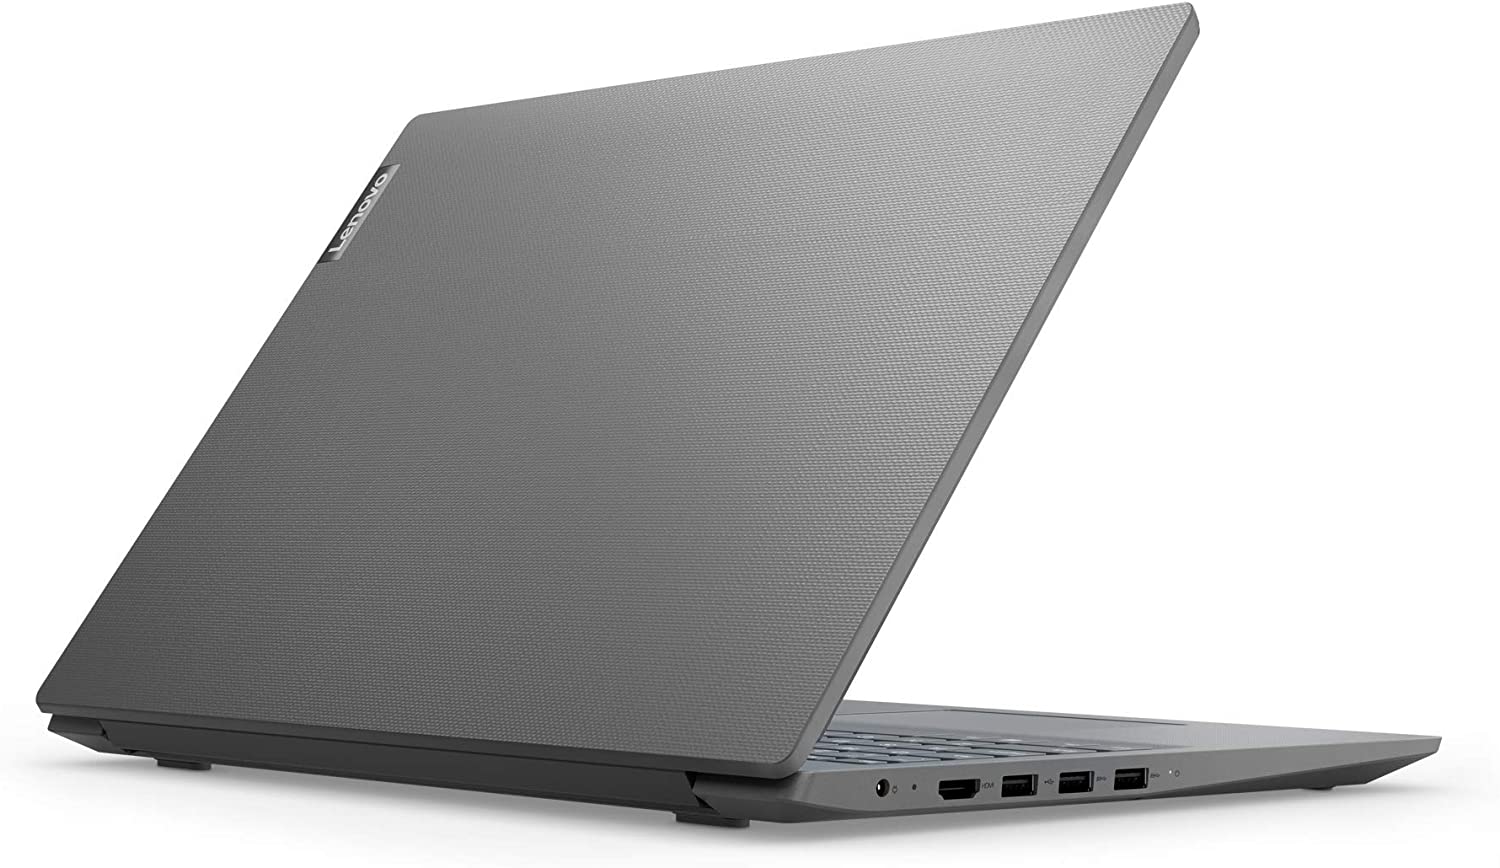 Laptop LENOVO V15 Intel Celeron N4020, Ram 8Gb, Disco solido SSD 256, Pantalla 15.6"  (1920x1080) FHD, Web cam incorporada,  Teclado Español, Color Gris, Nuevo, garantia 1 año